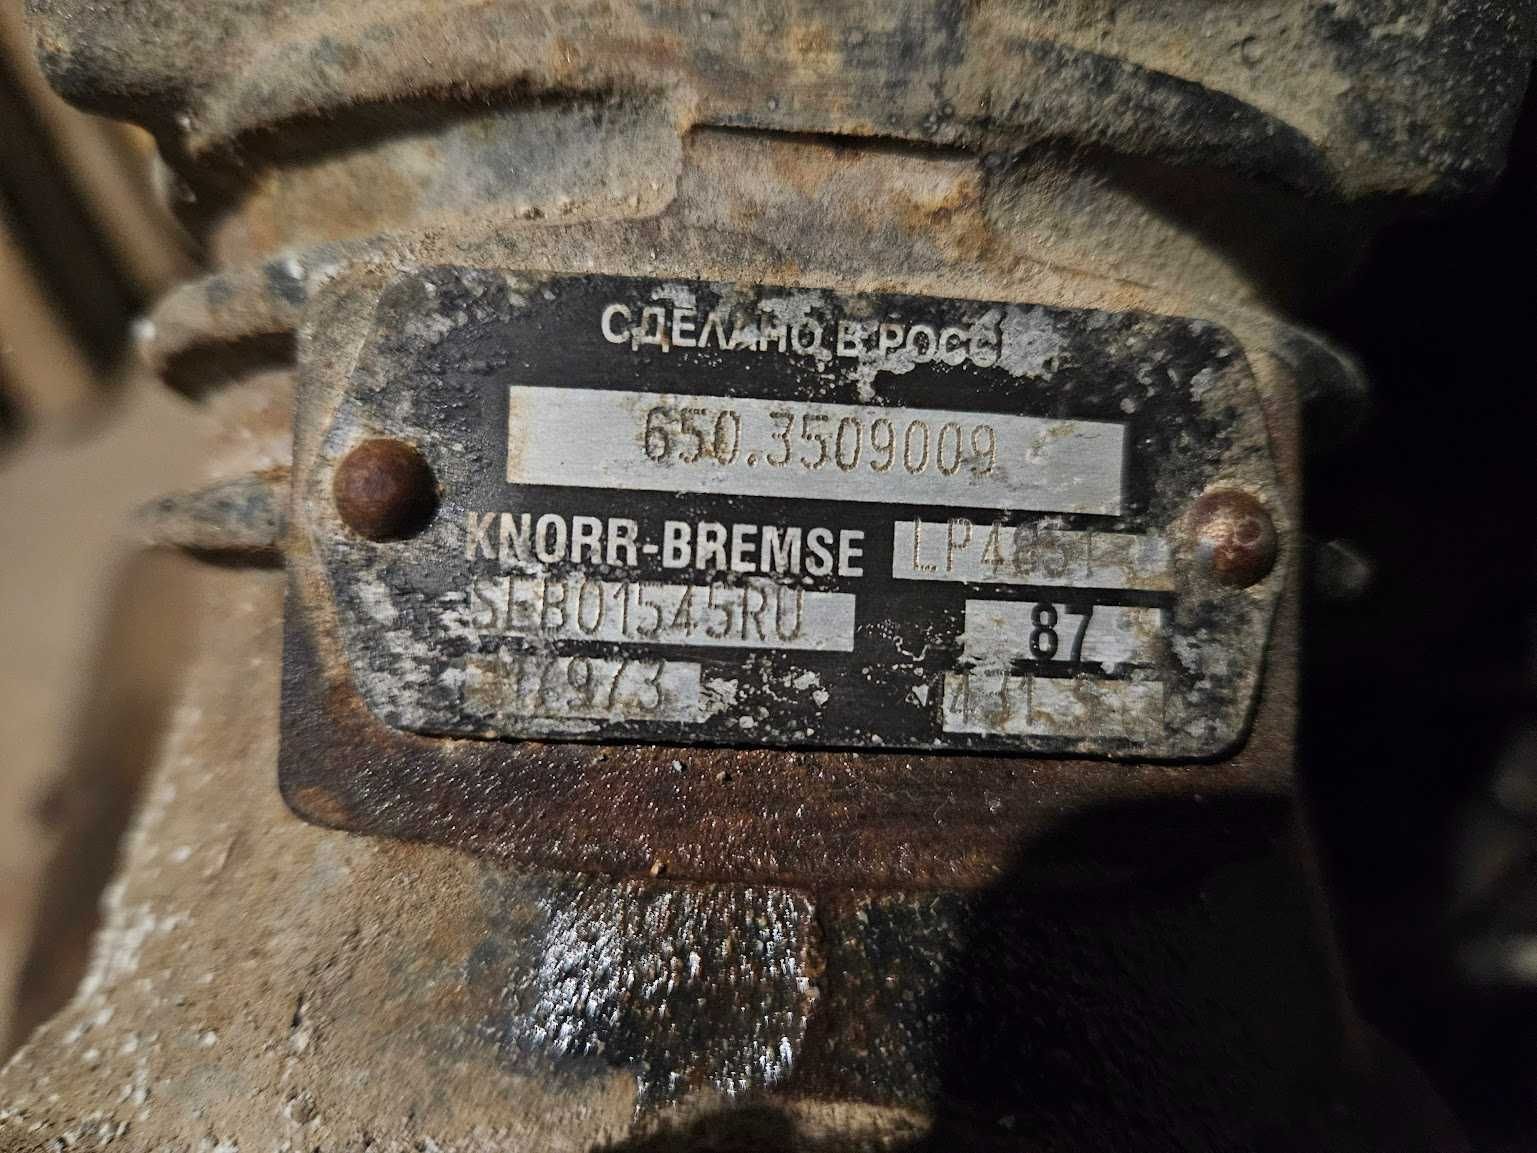 Компрессор Knorr-bremse LP4851, SEB01545X00, 6503509009. ЯМЗ 650, 651